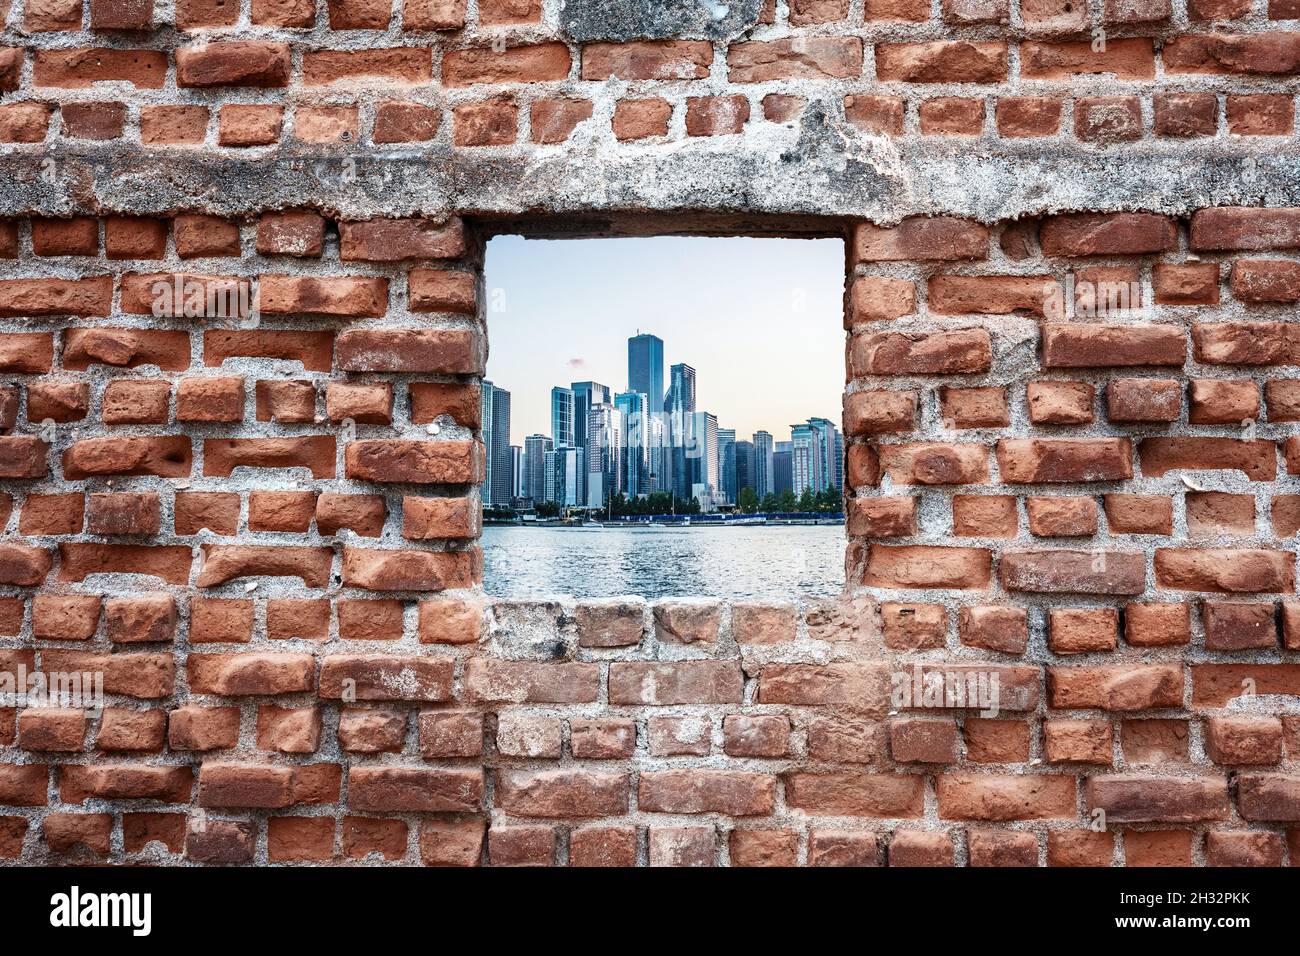 Vieille fenêtre en briques en ruines avec vue sur la mer et les gratte-ciel.Concept d'urbanisation. Banque D'Images